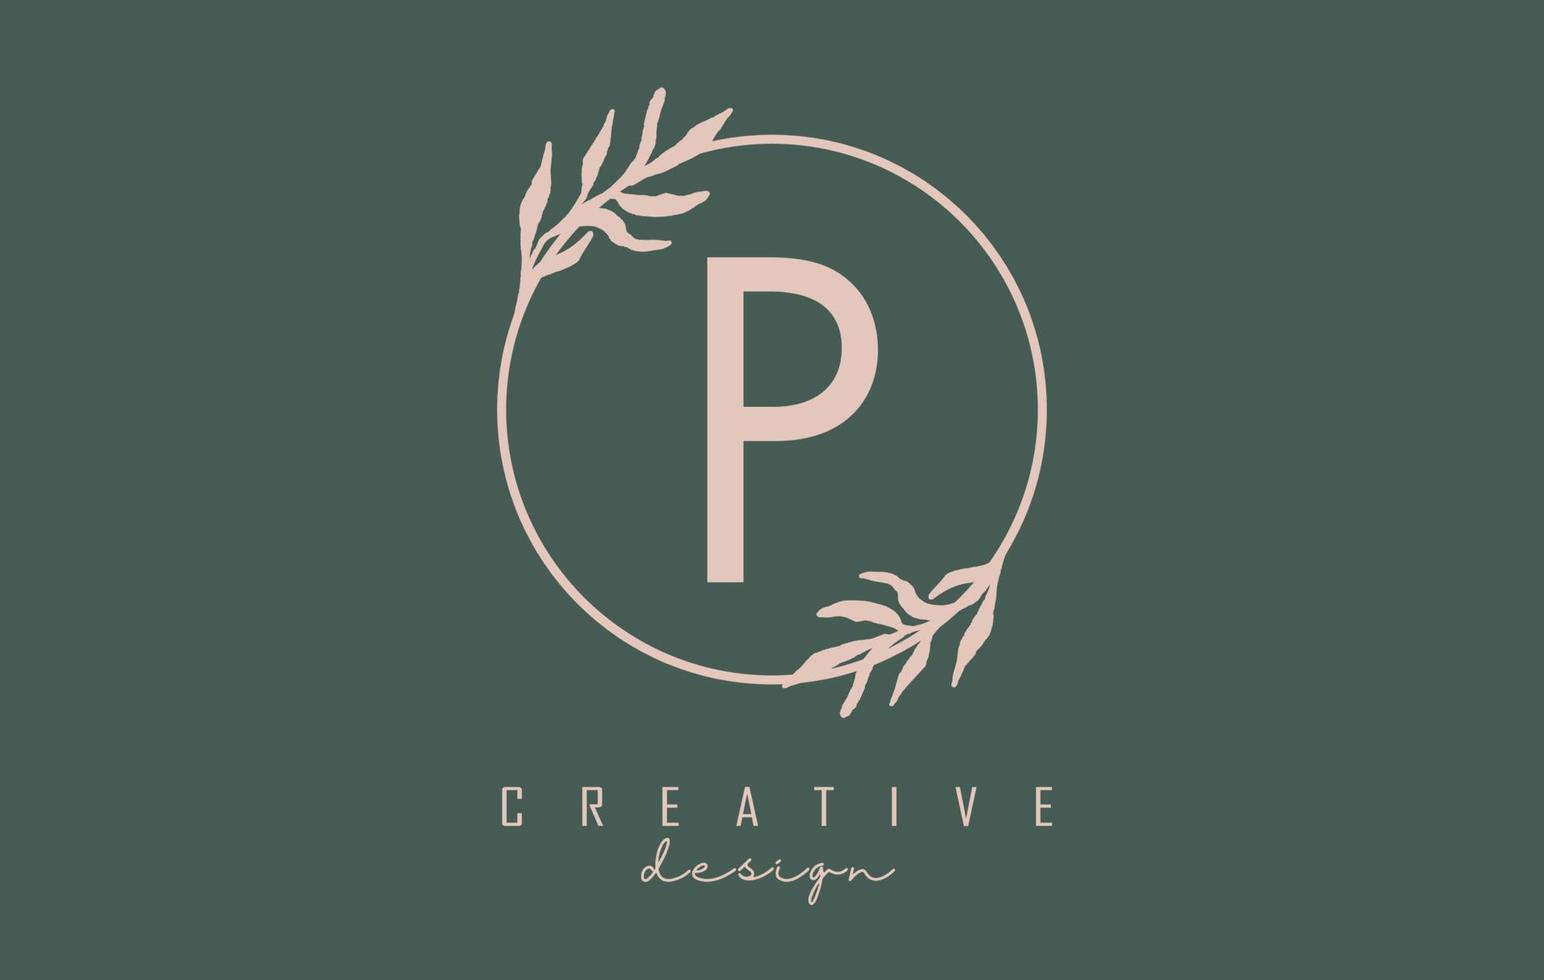 logo della lettera p con cornice circolare e design di foglie pastello. illustrazione vettoriale arrotondata con lettera p e foglia pastello.